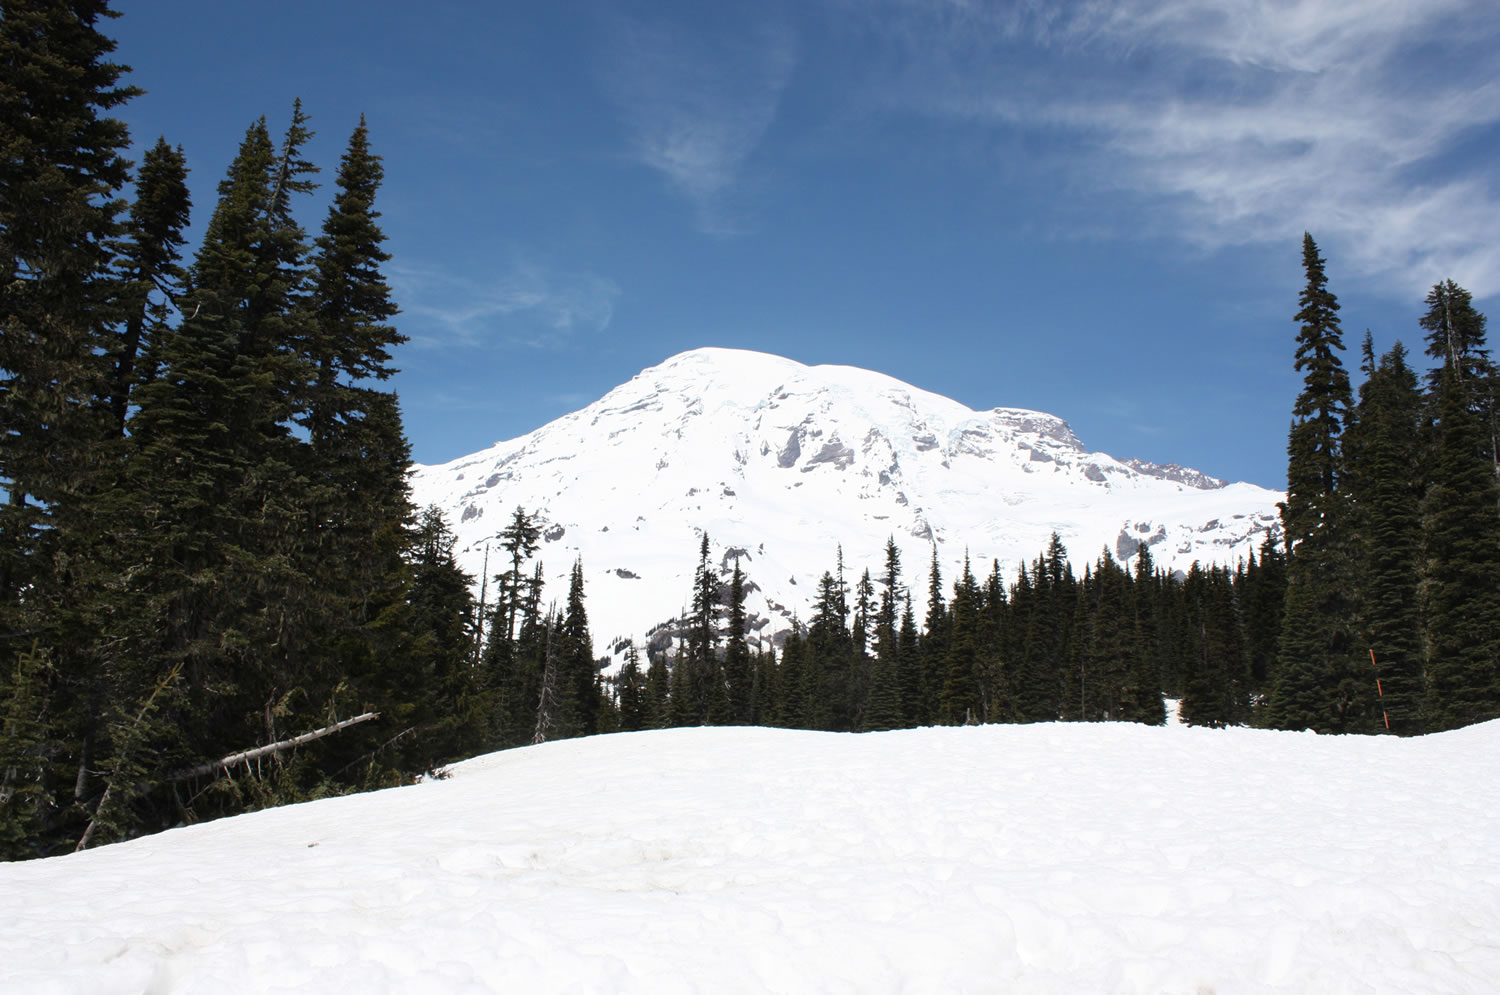 Mount Rainier in June.